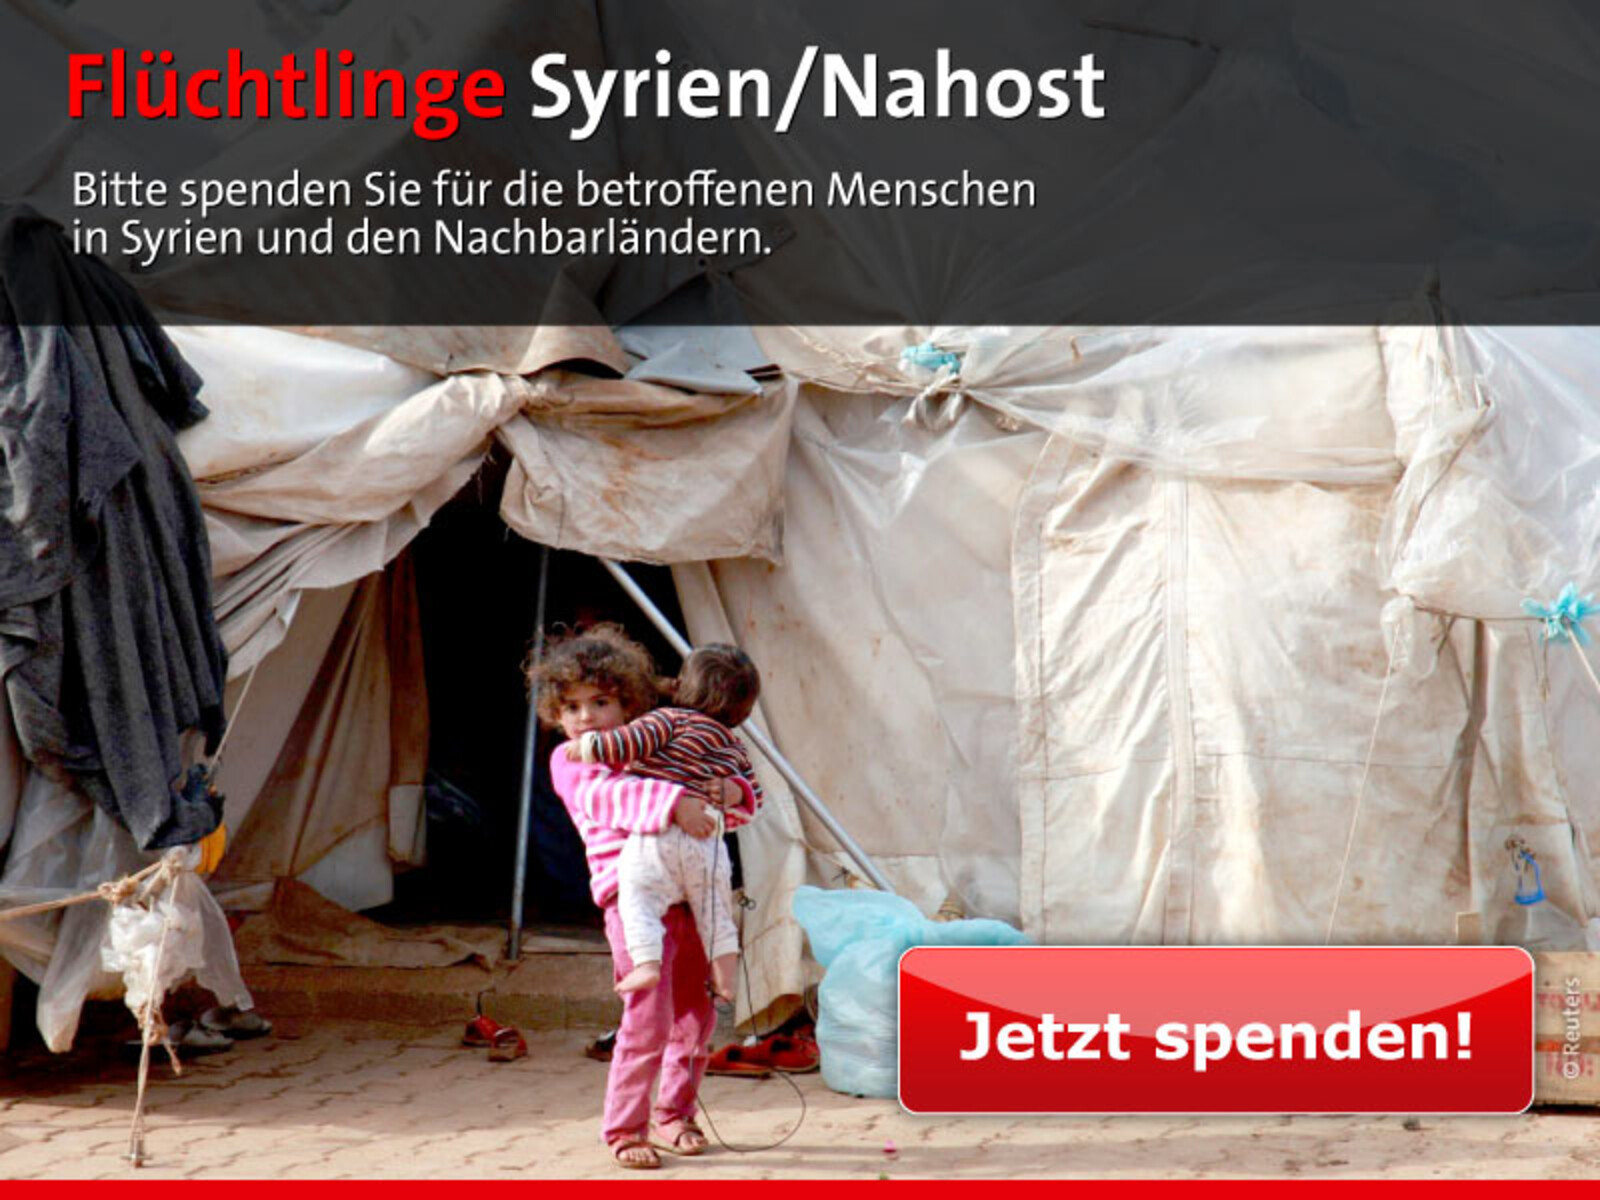 Bitte spenden Sie für die betroffenen Menschen in Syrien und den Nachbarländern.